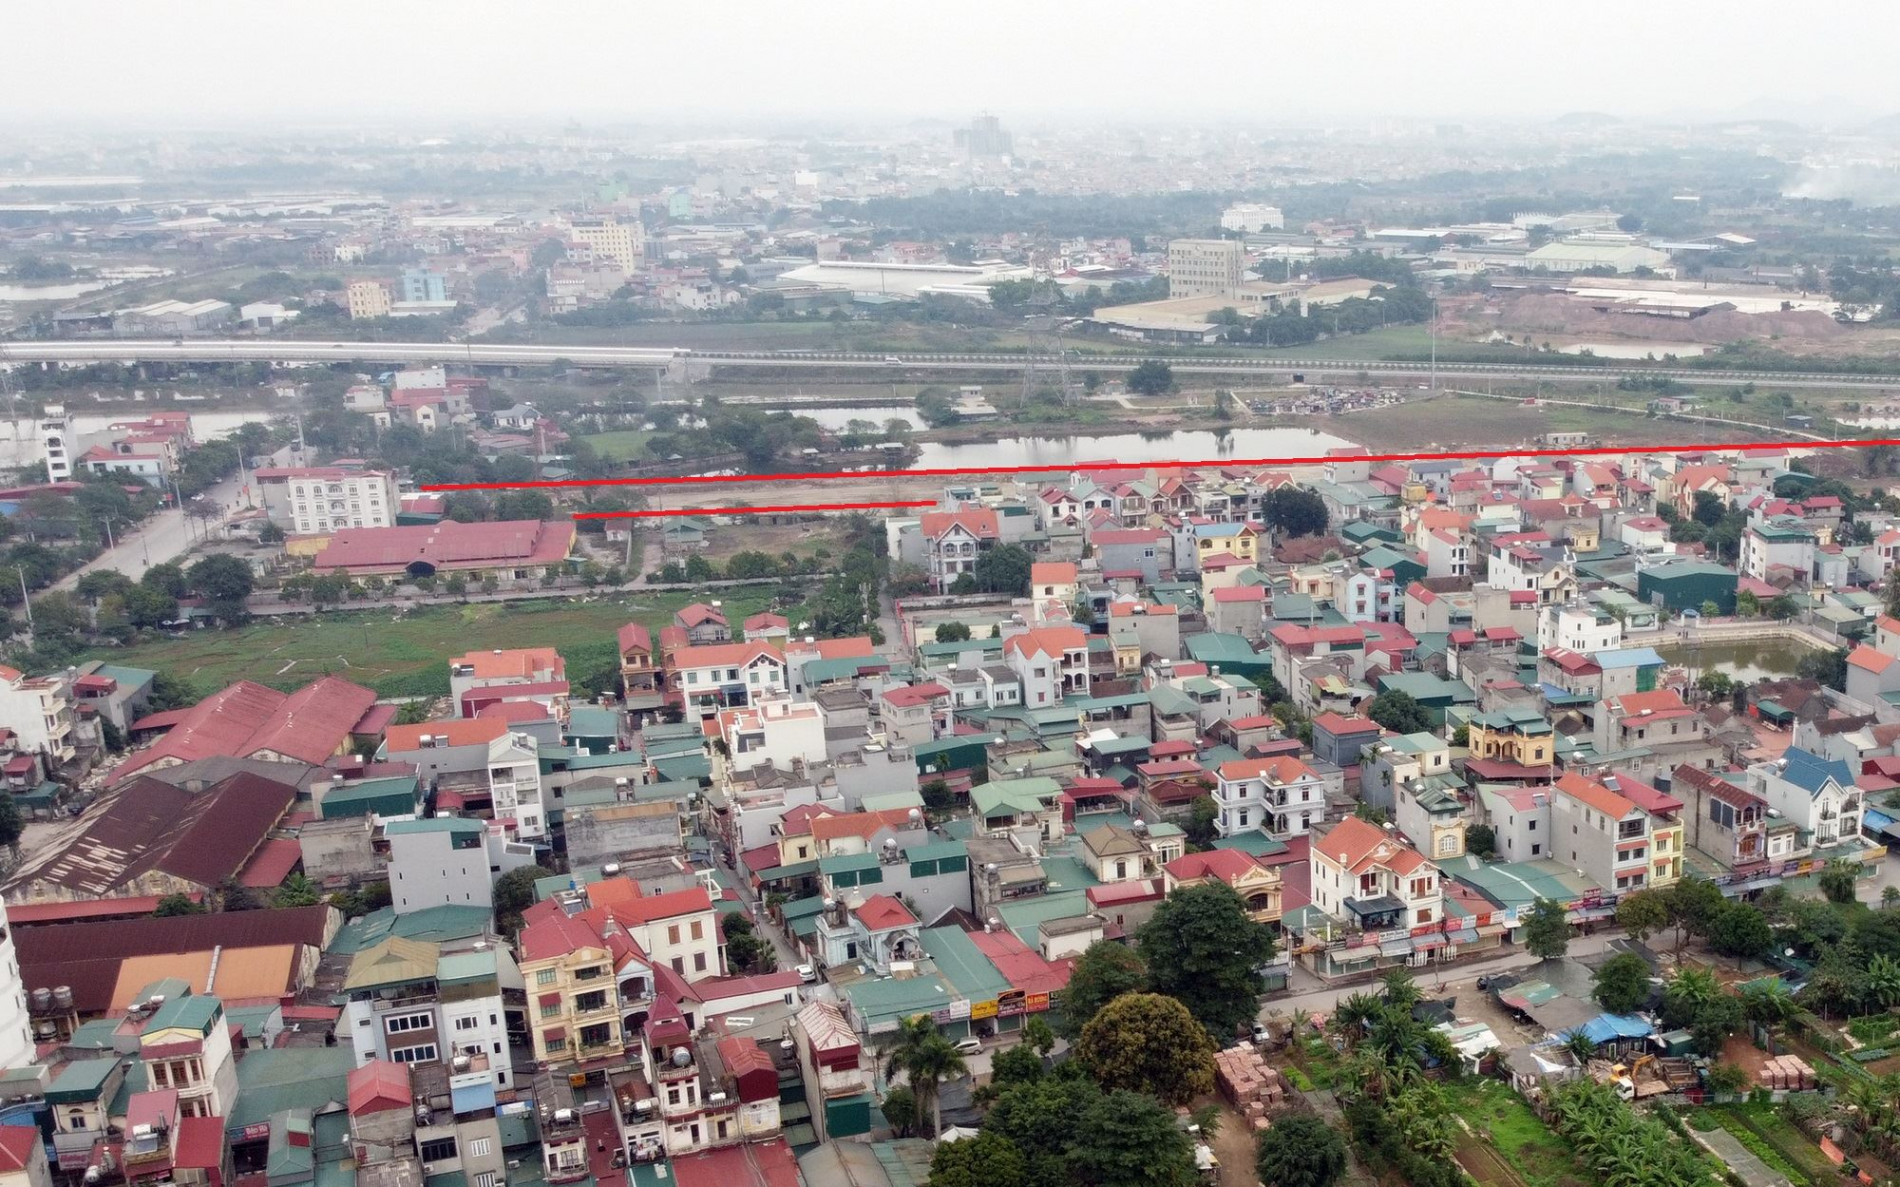 Đường sẽ mở theo quy hoạch ở xã Yên Thường, Gia Lâm, Hà Nội (phần 2)